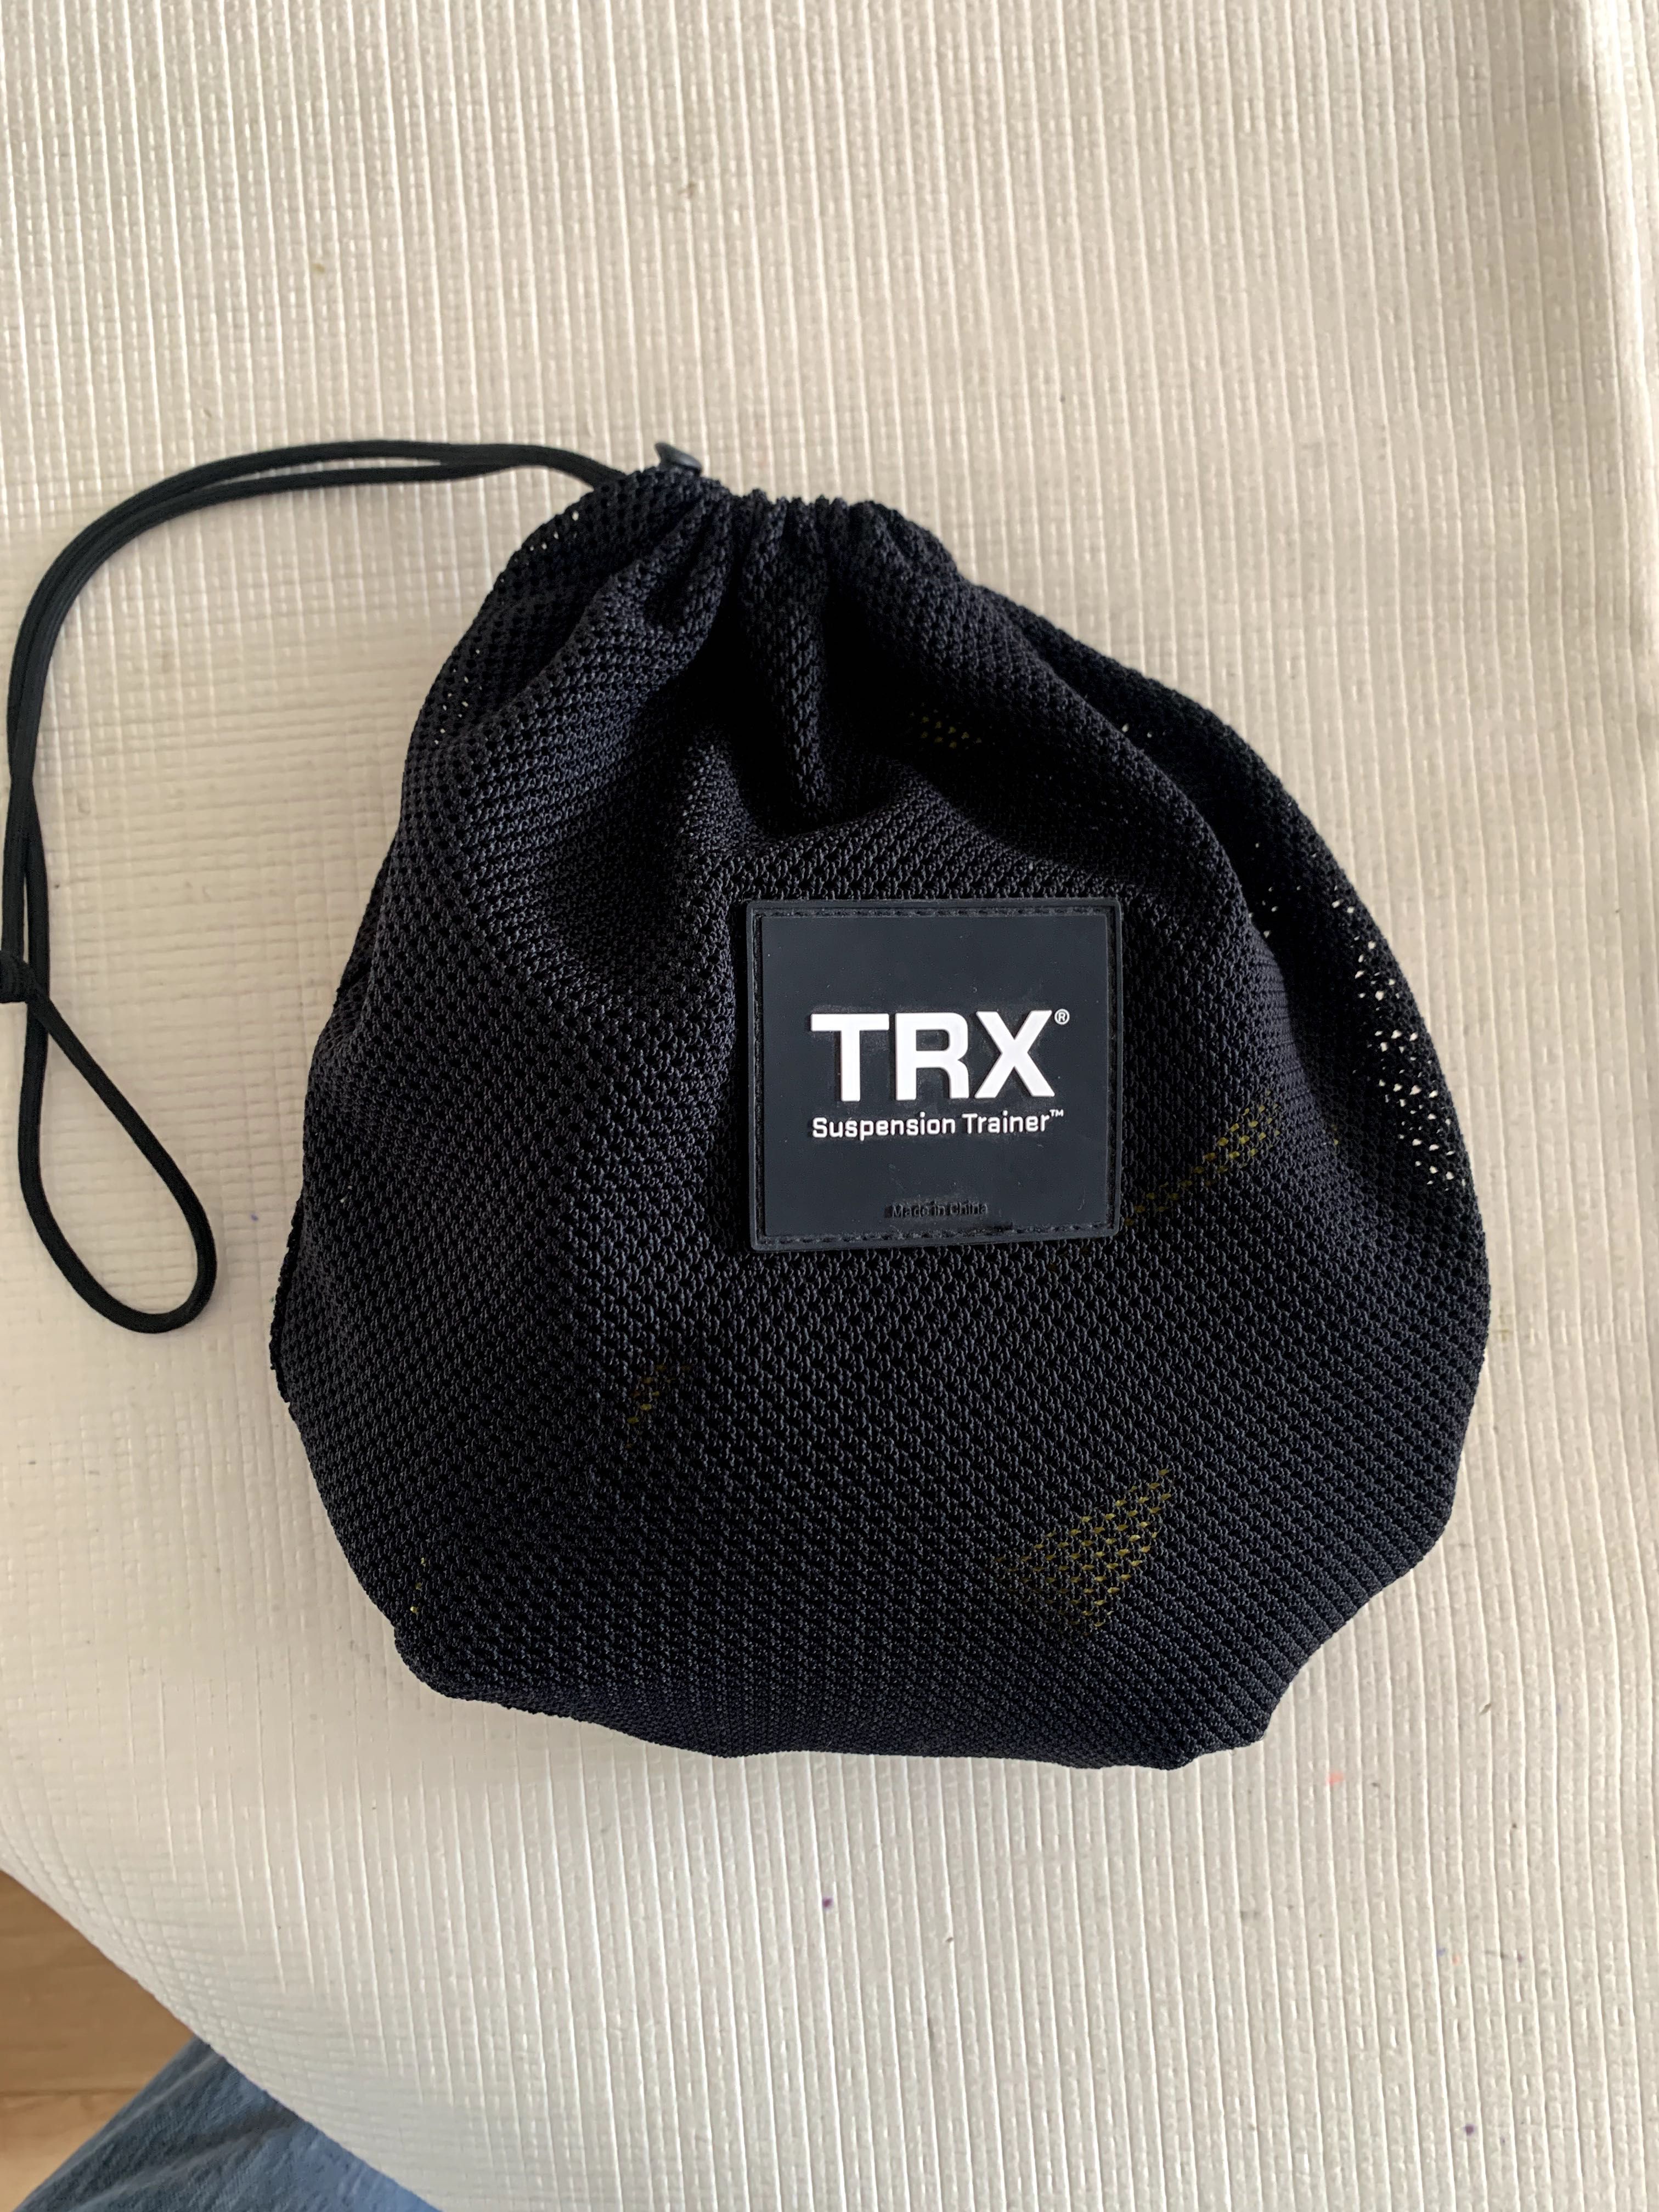 TRX Pro4 System e Acessórios Como Novo